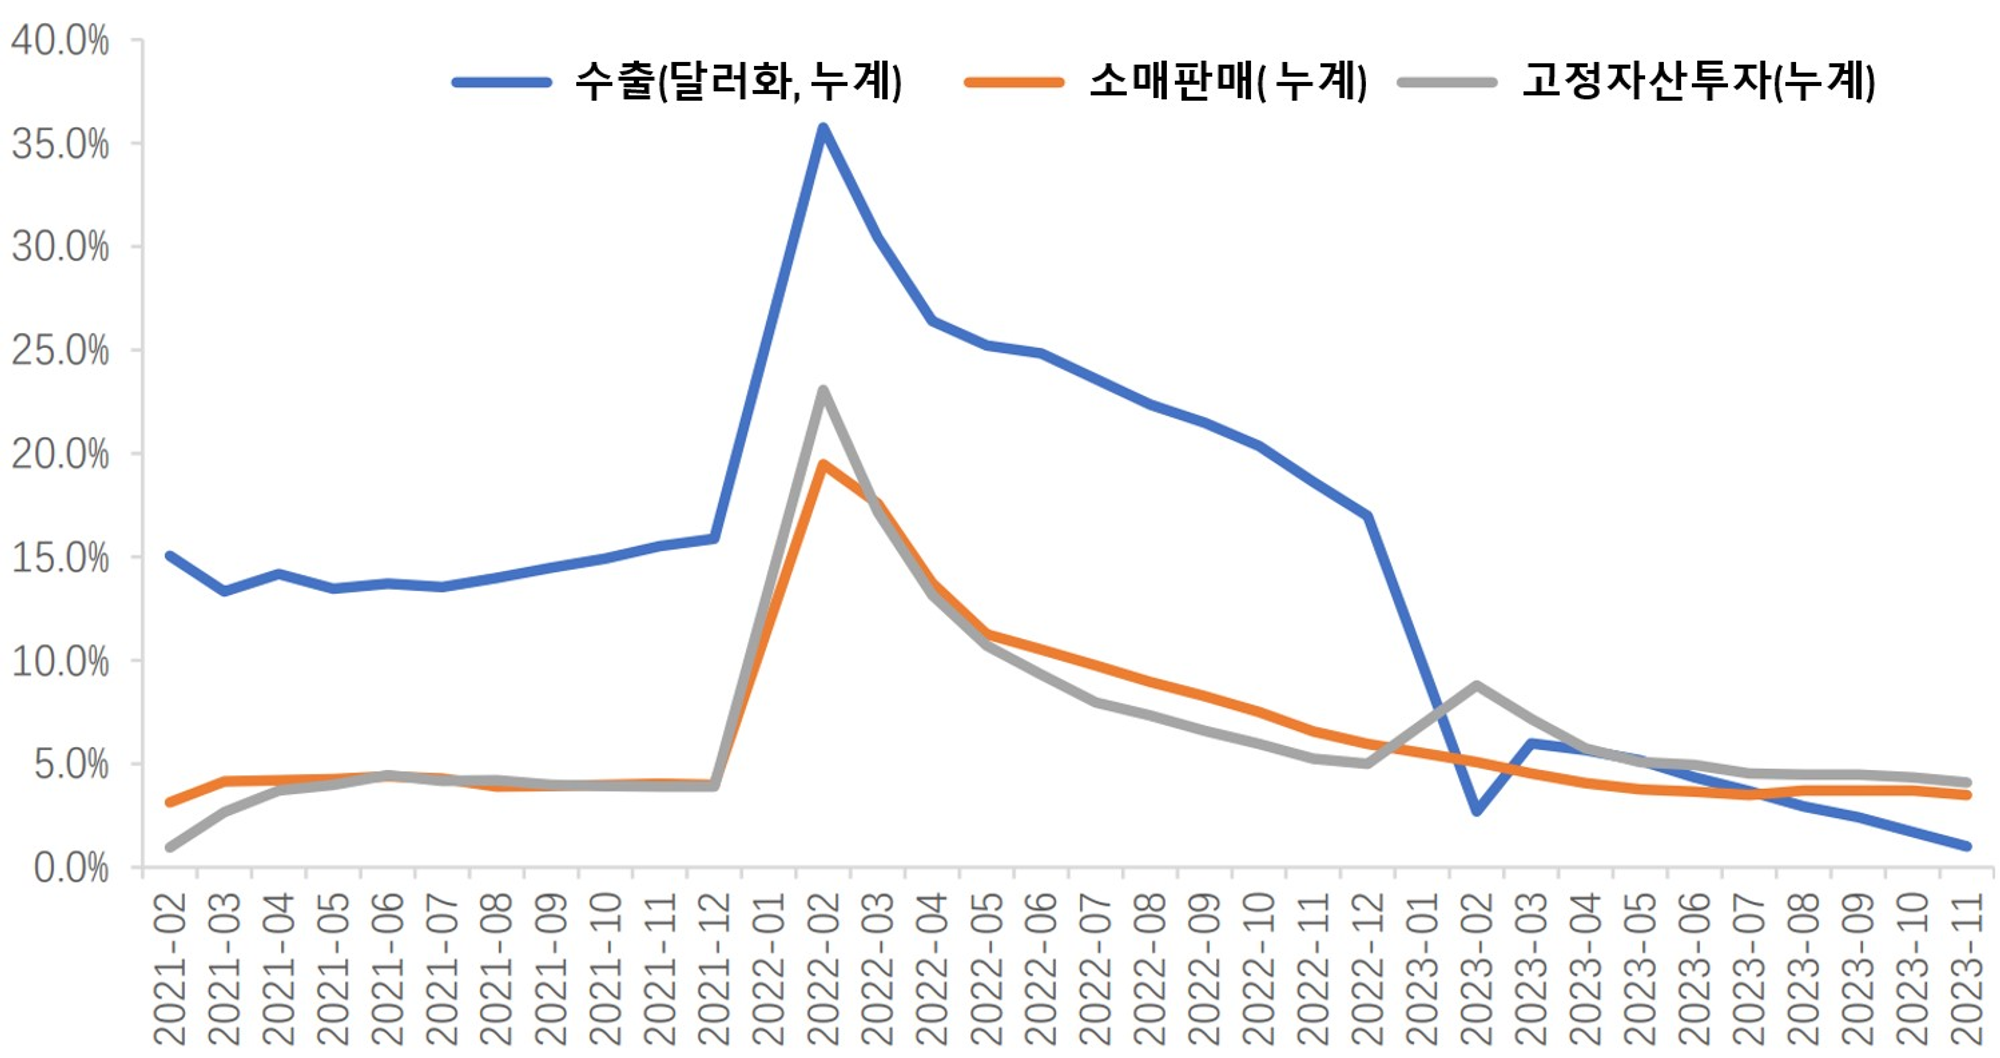 삼두마차(수출/소매판매/고정자산투자)의 증가율 회복추세 | 자료: wind, 상하이증권(上海證券)연구소